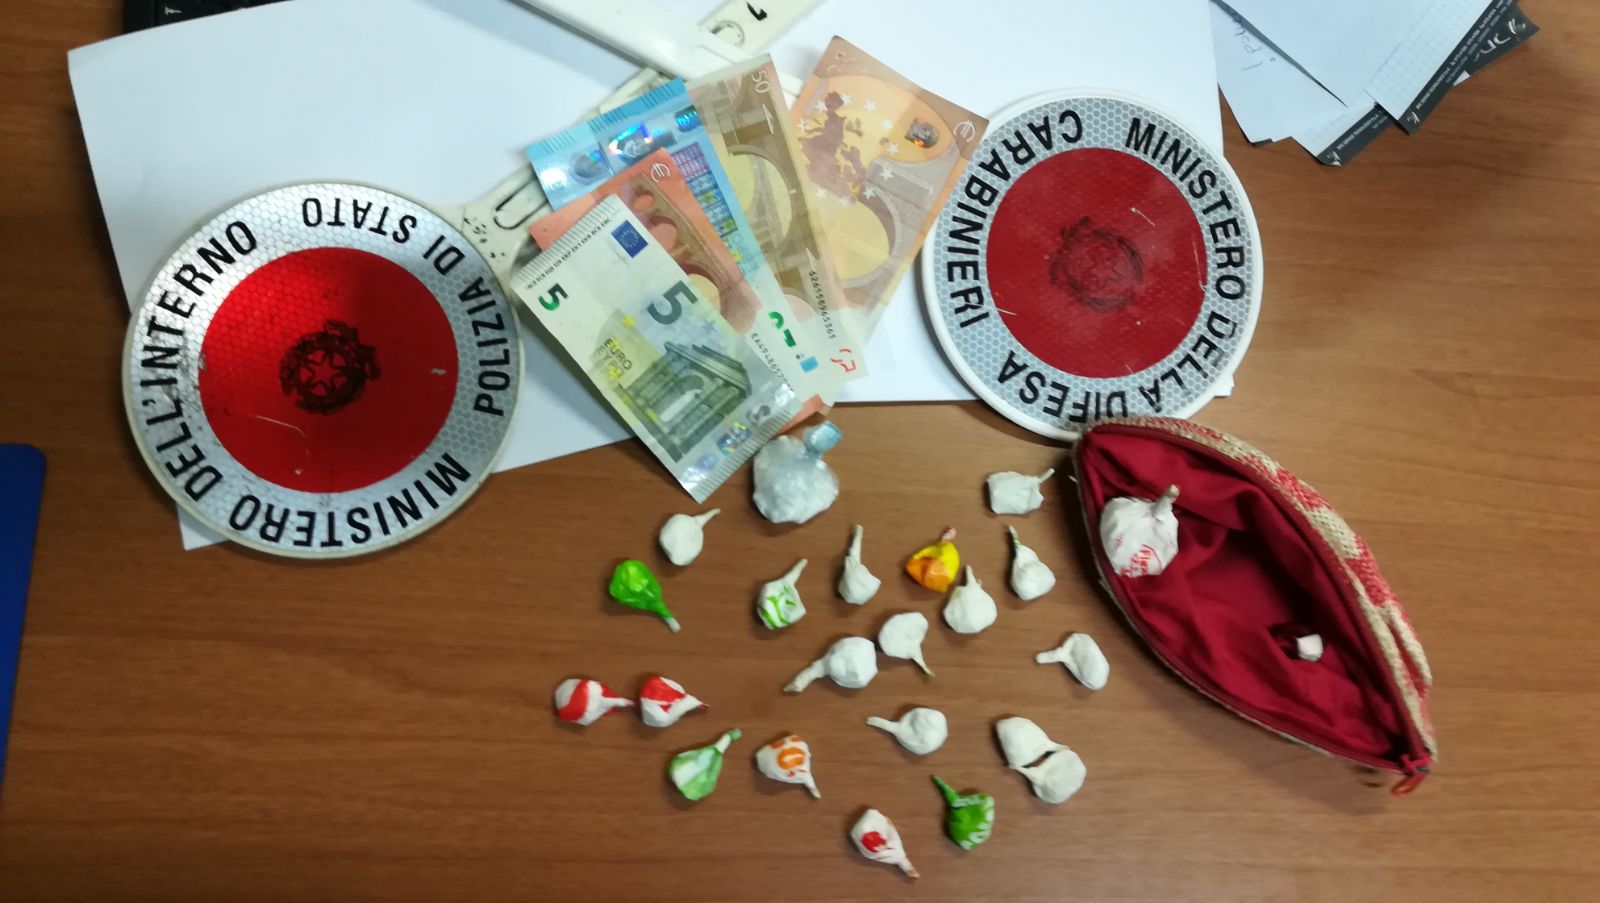 Arrestata pusher a Frosinone: rinvenuta cocaina già pronta per lo spaccio nella sua abitazione